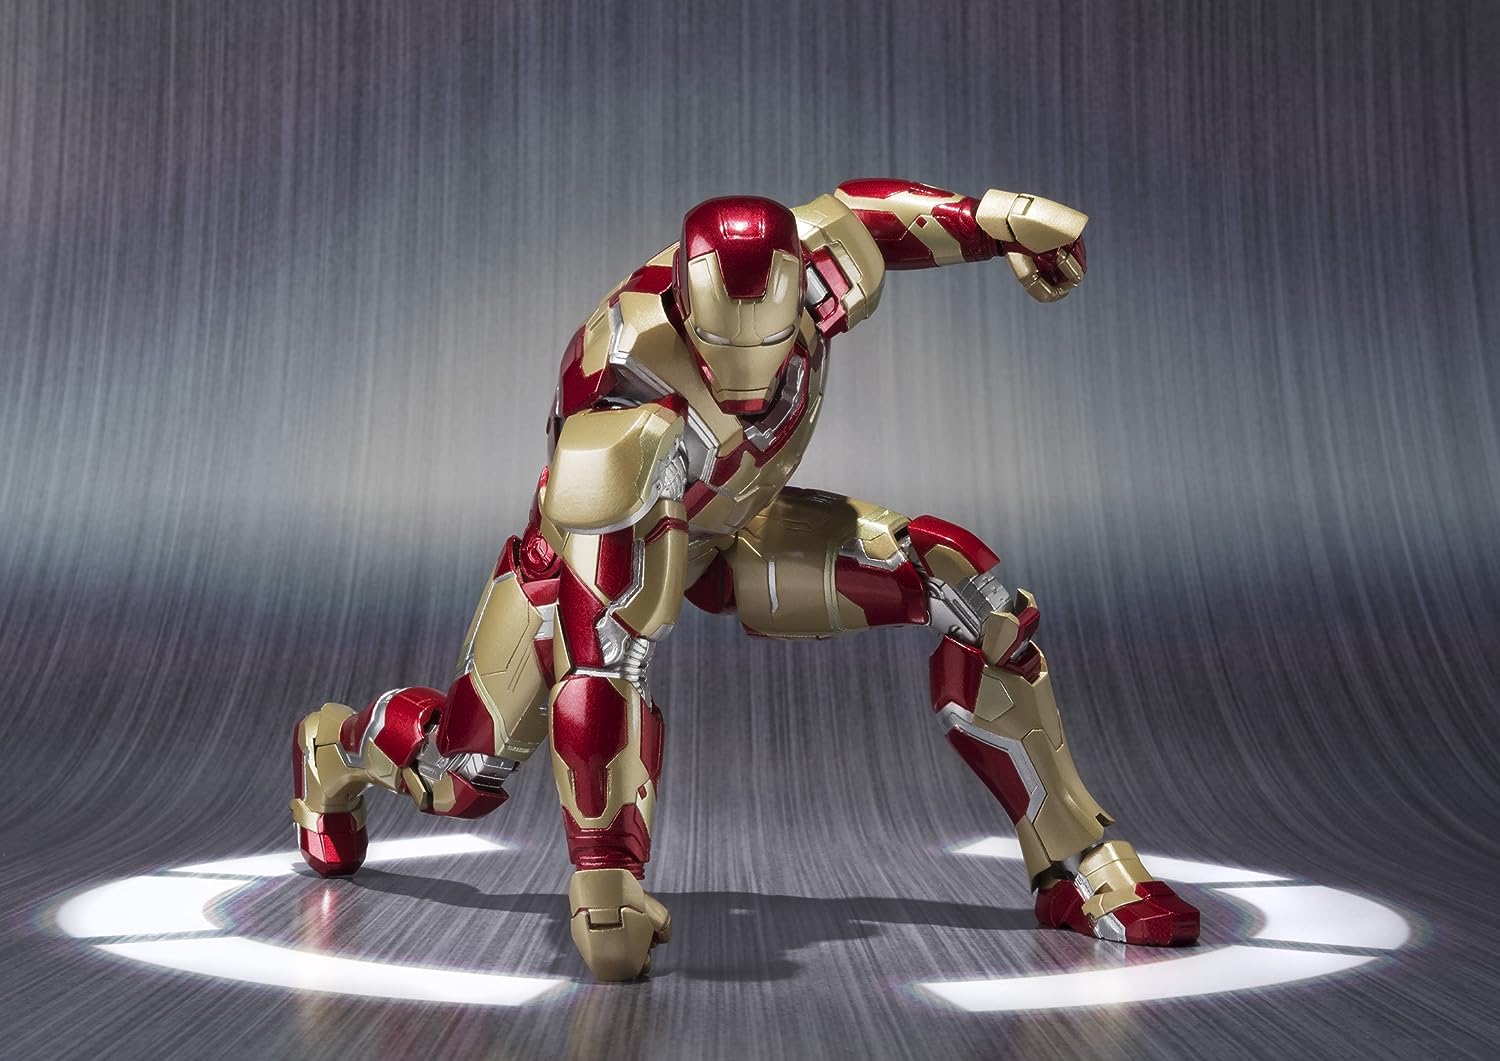 S.H. Figuarts - Iron Man Mark 42 "Iron Man 3" | animota